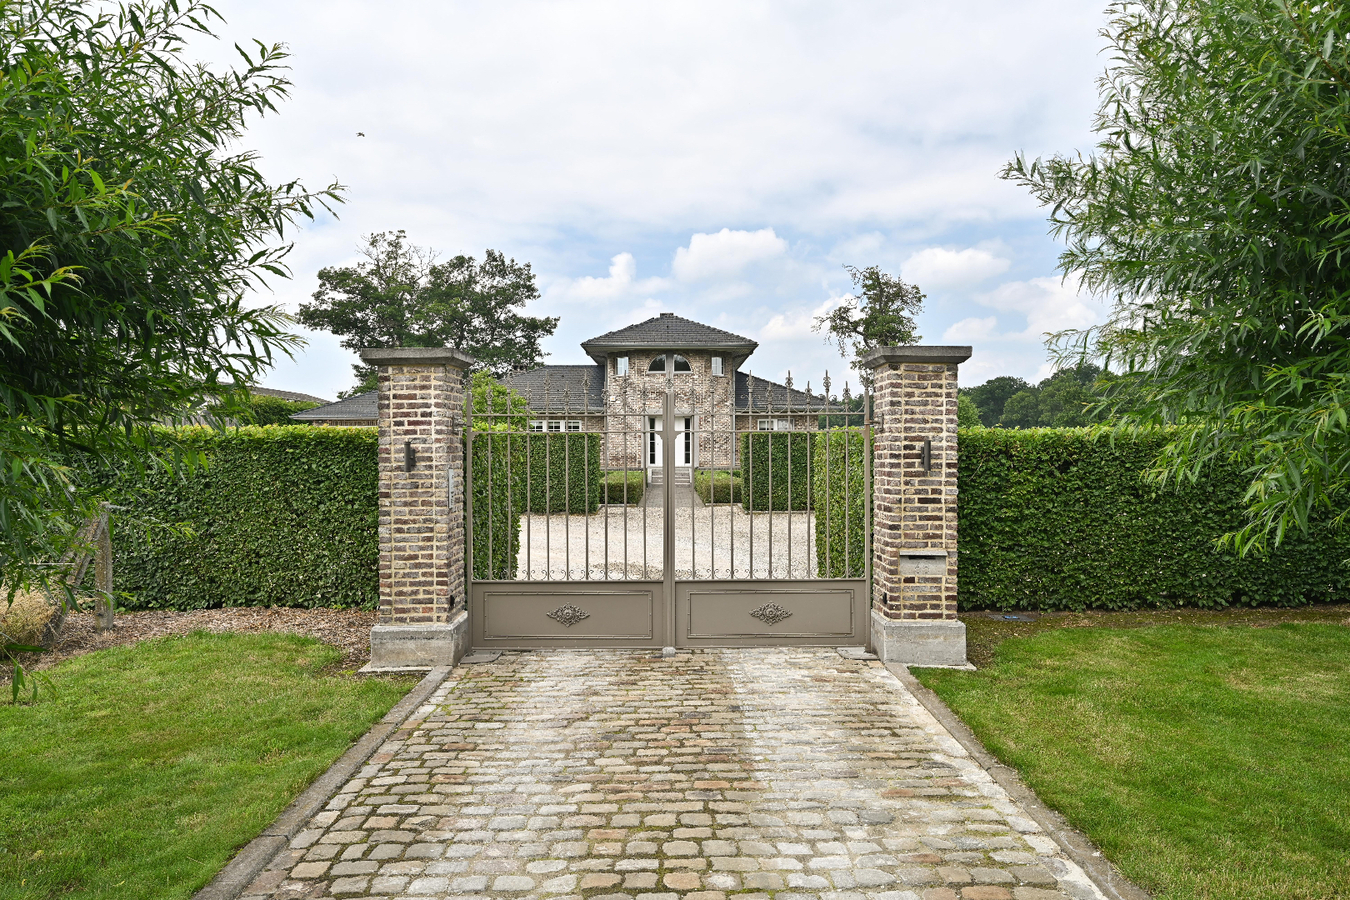 Property for sale in Heusden-Zolder